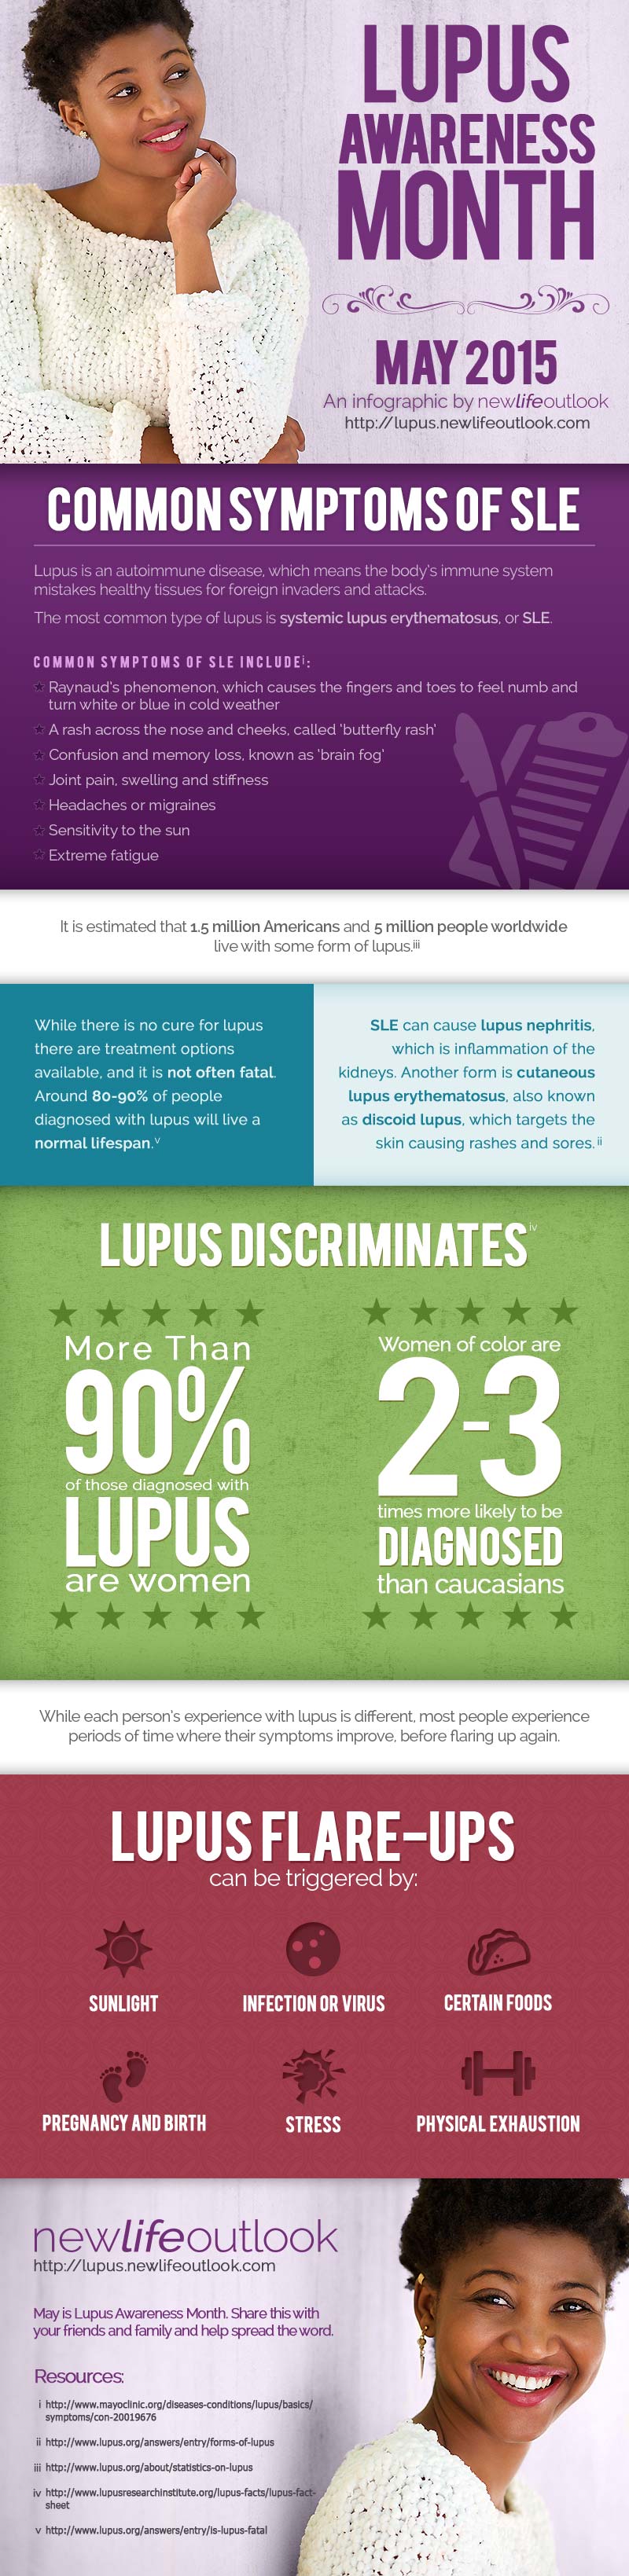 Lupus Awareness Month 2015